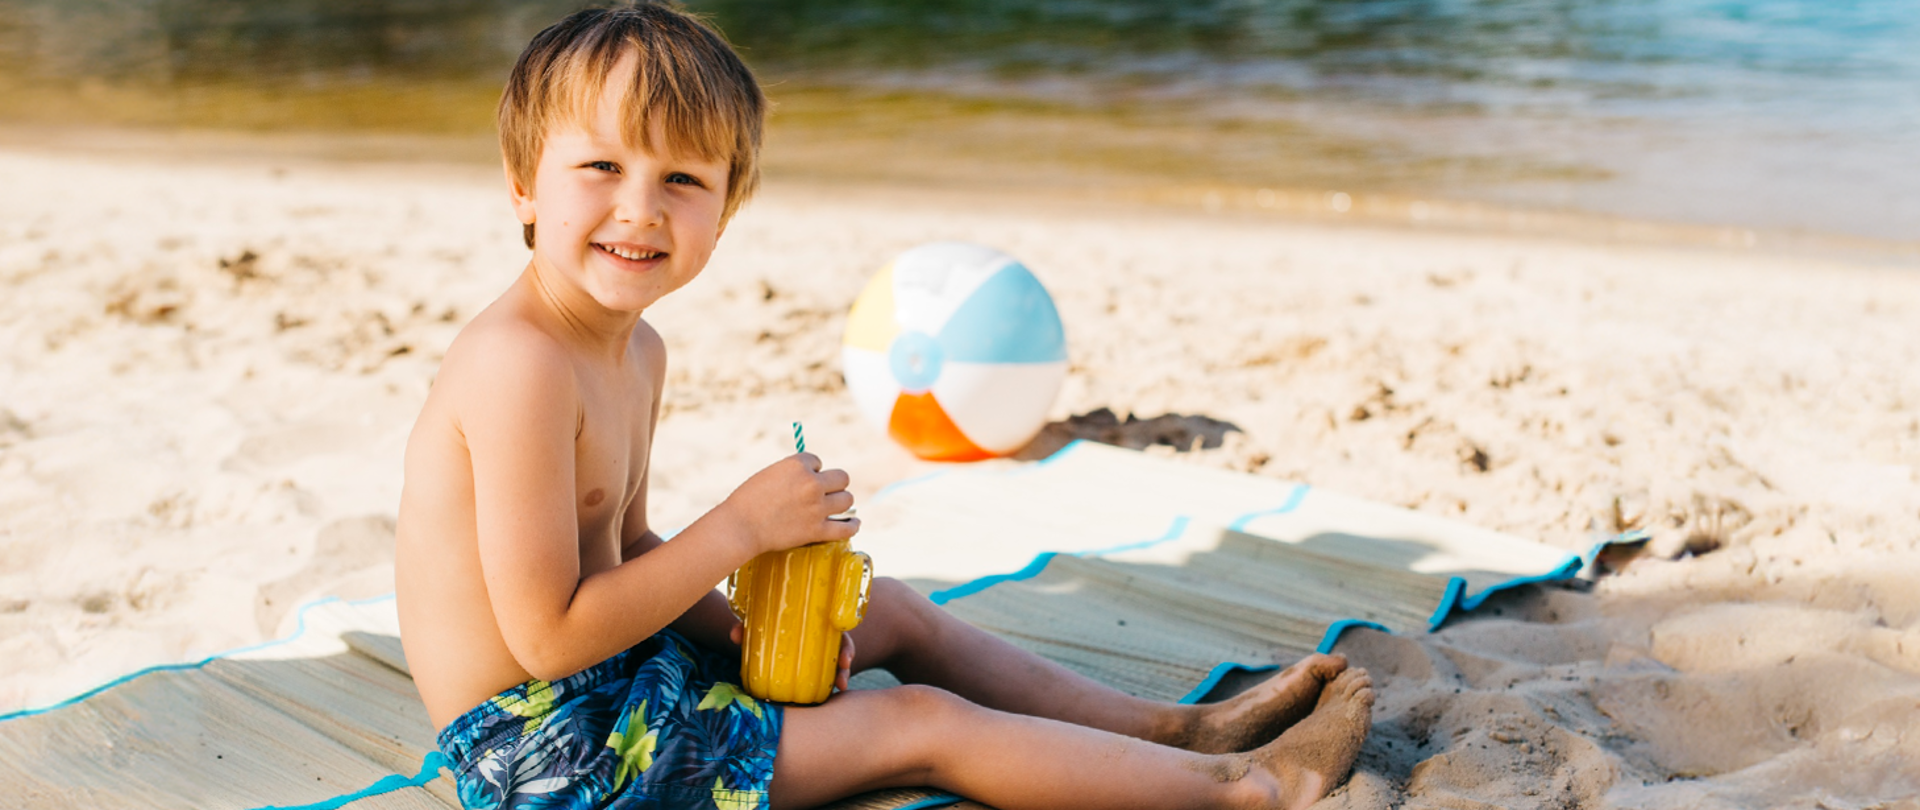 chłopiec siedzi na kocu na plaży i pije napój 